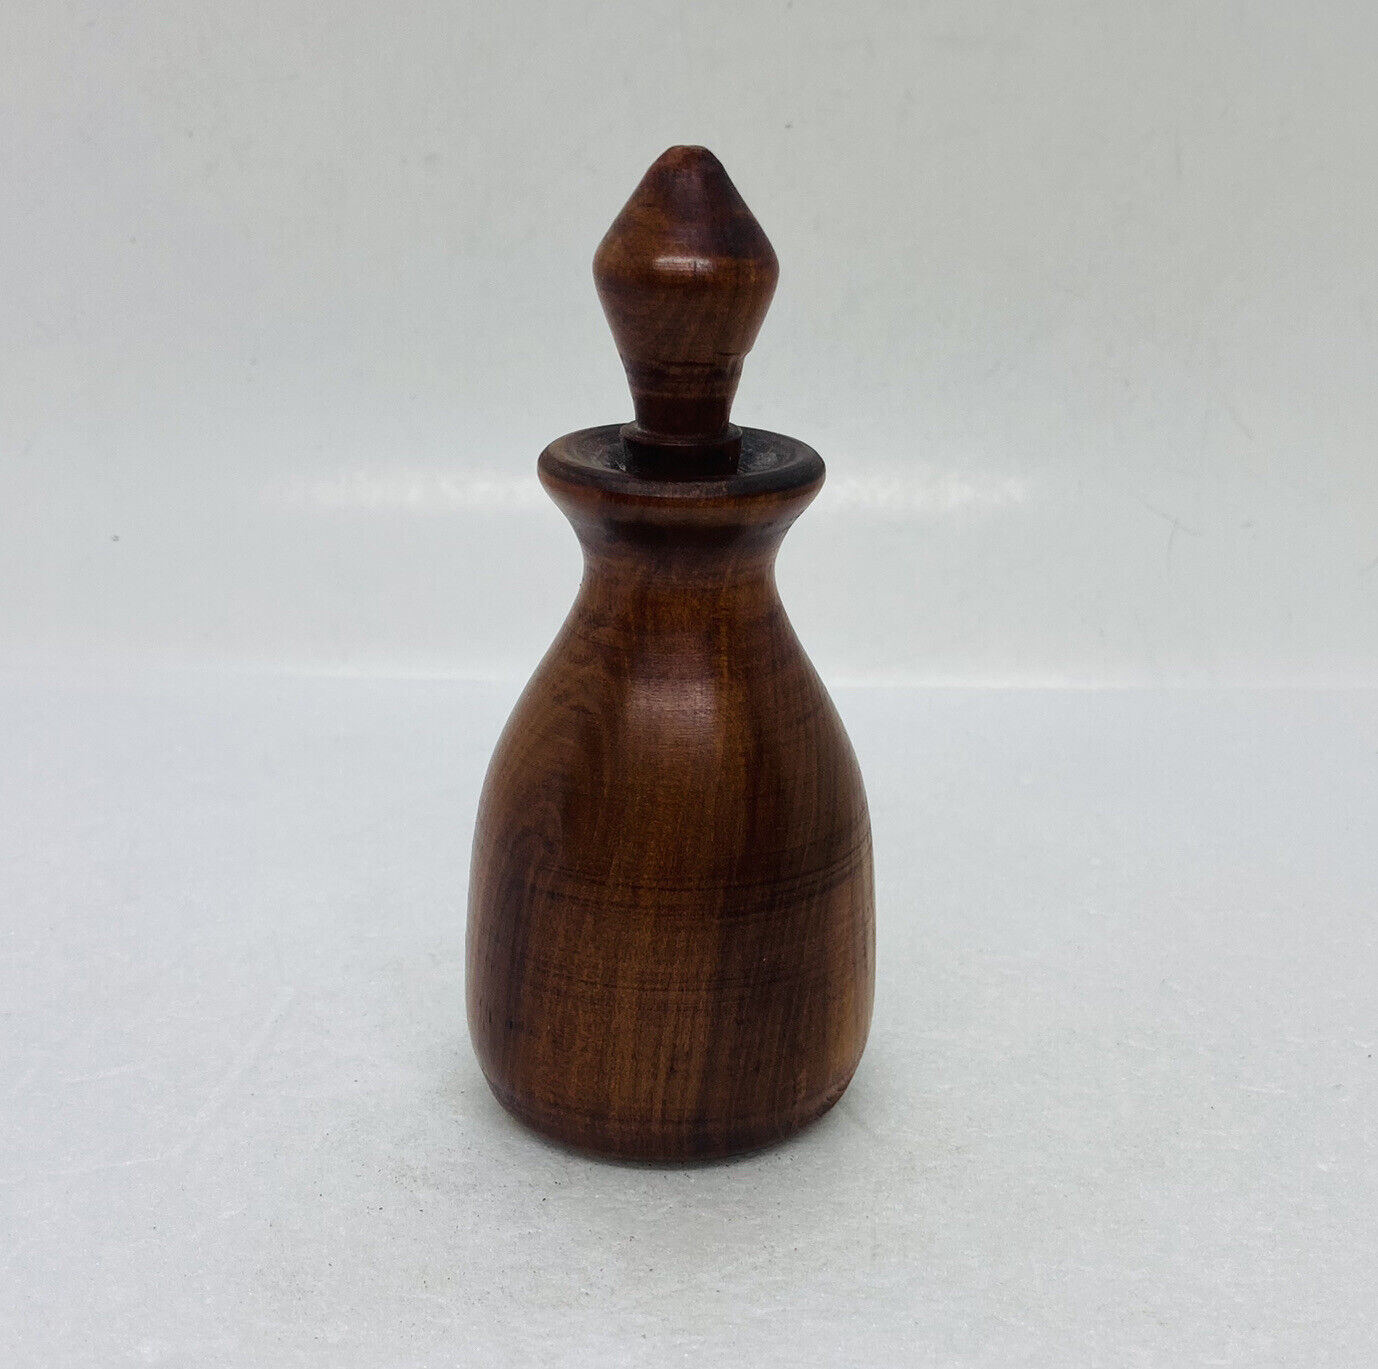 Vintage 1989s  Solid Wood Carved Figurine Bottle Design 4.5” Art Decor Signed C3